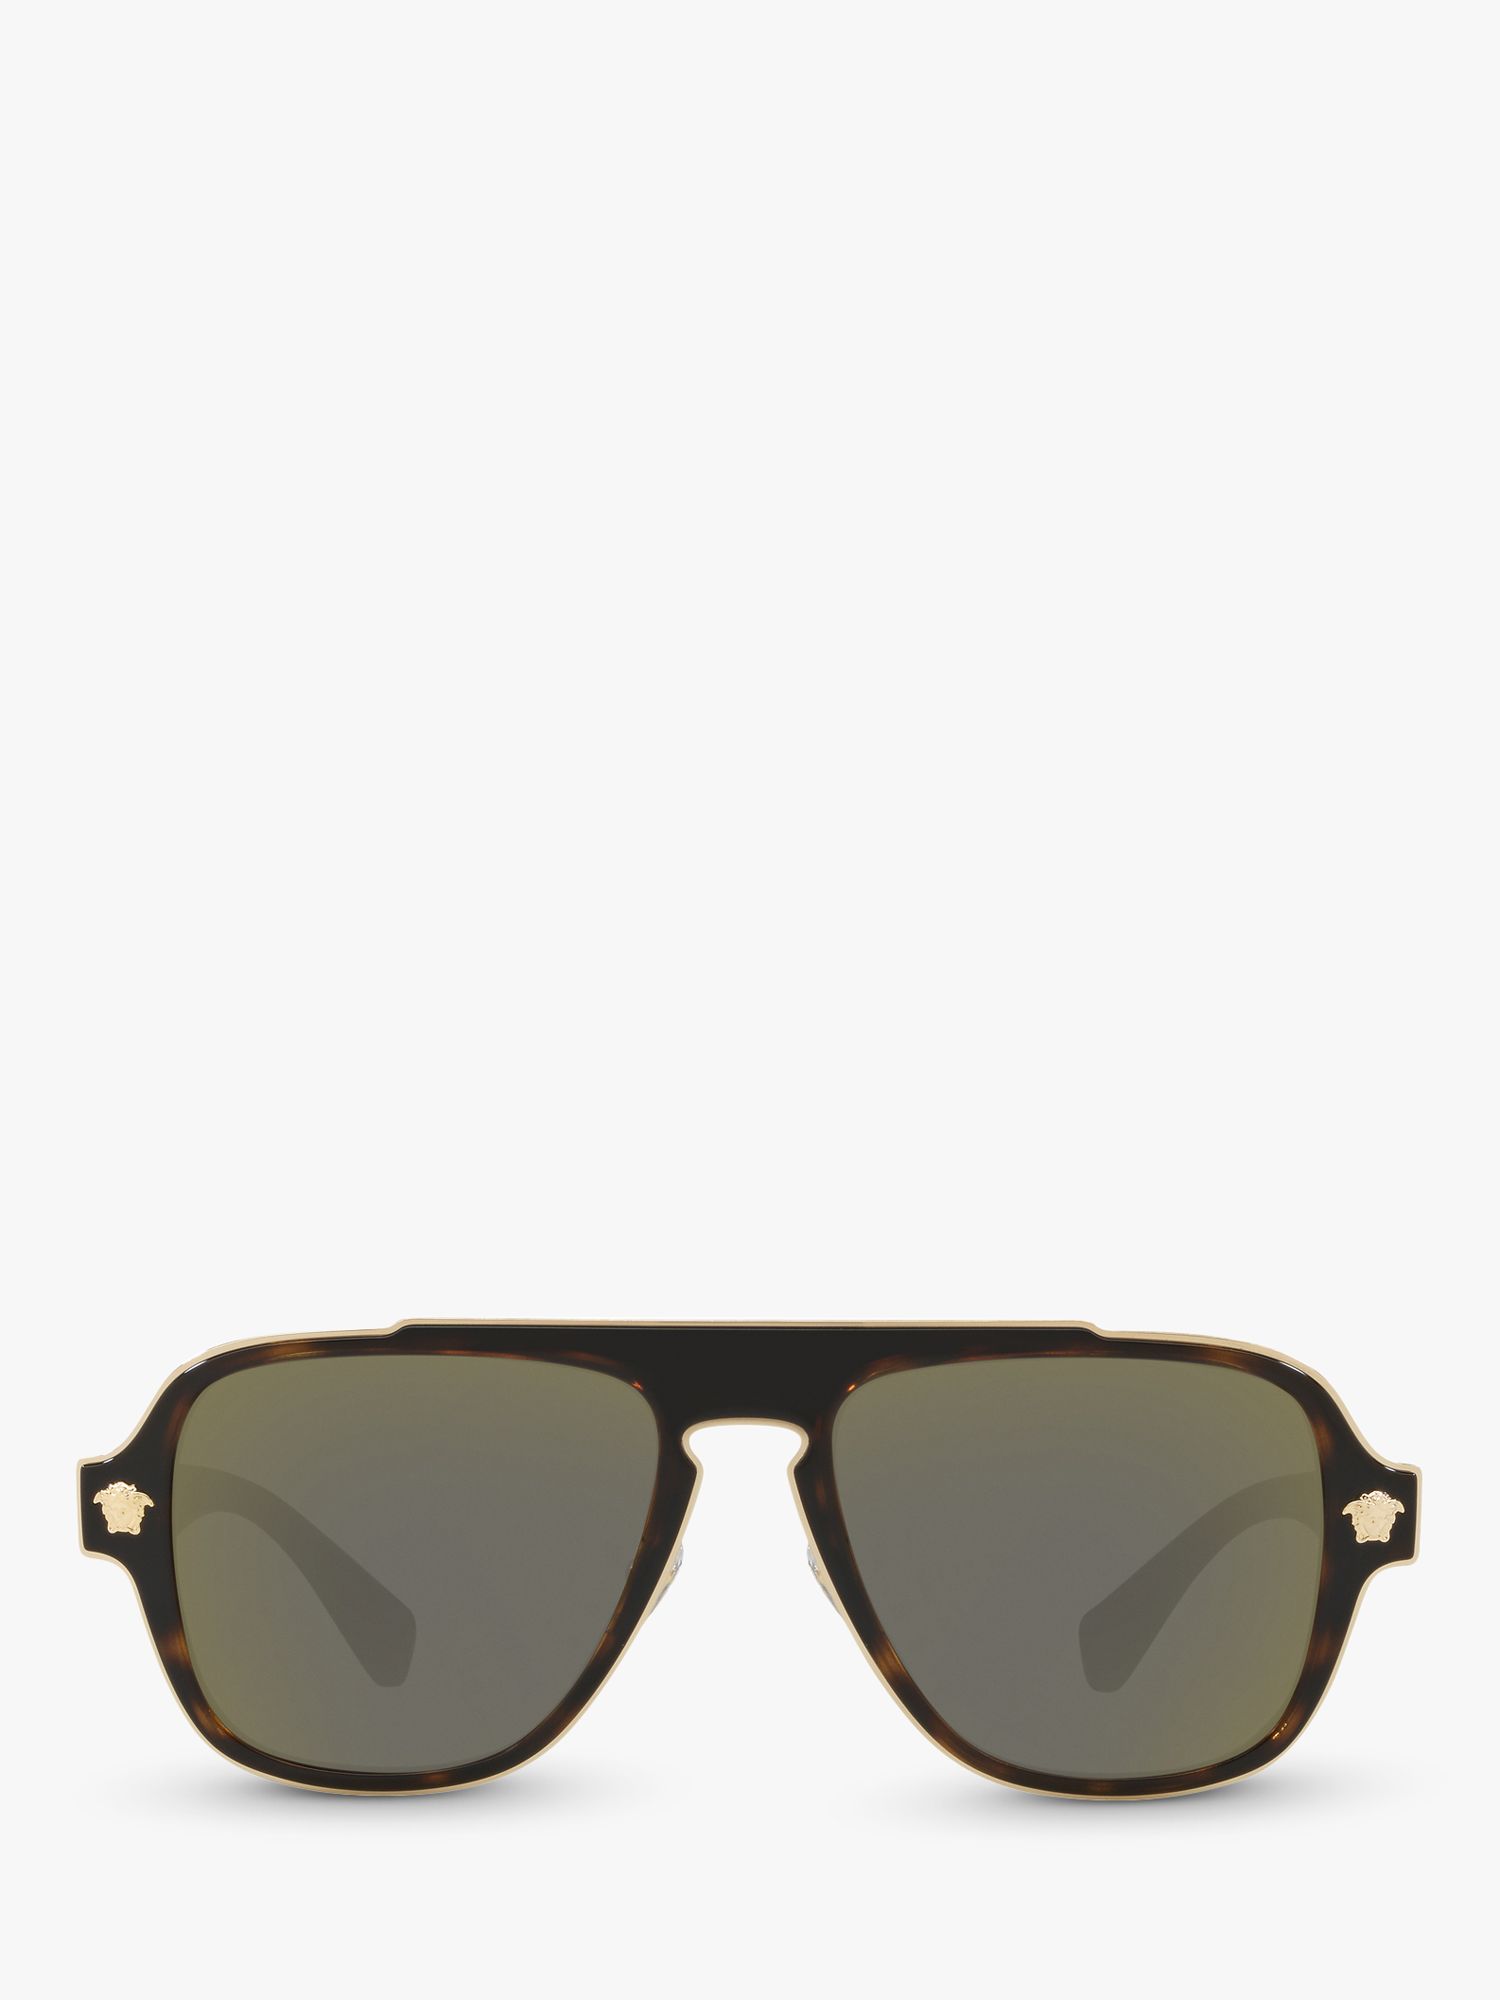 Buy Versace VE2199 Men's Geometric Sunglasses, Havana/Grey Online at johnlewis.com